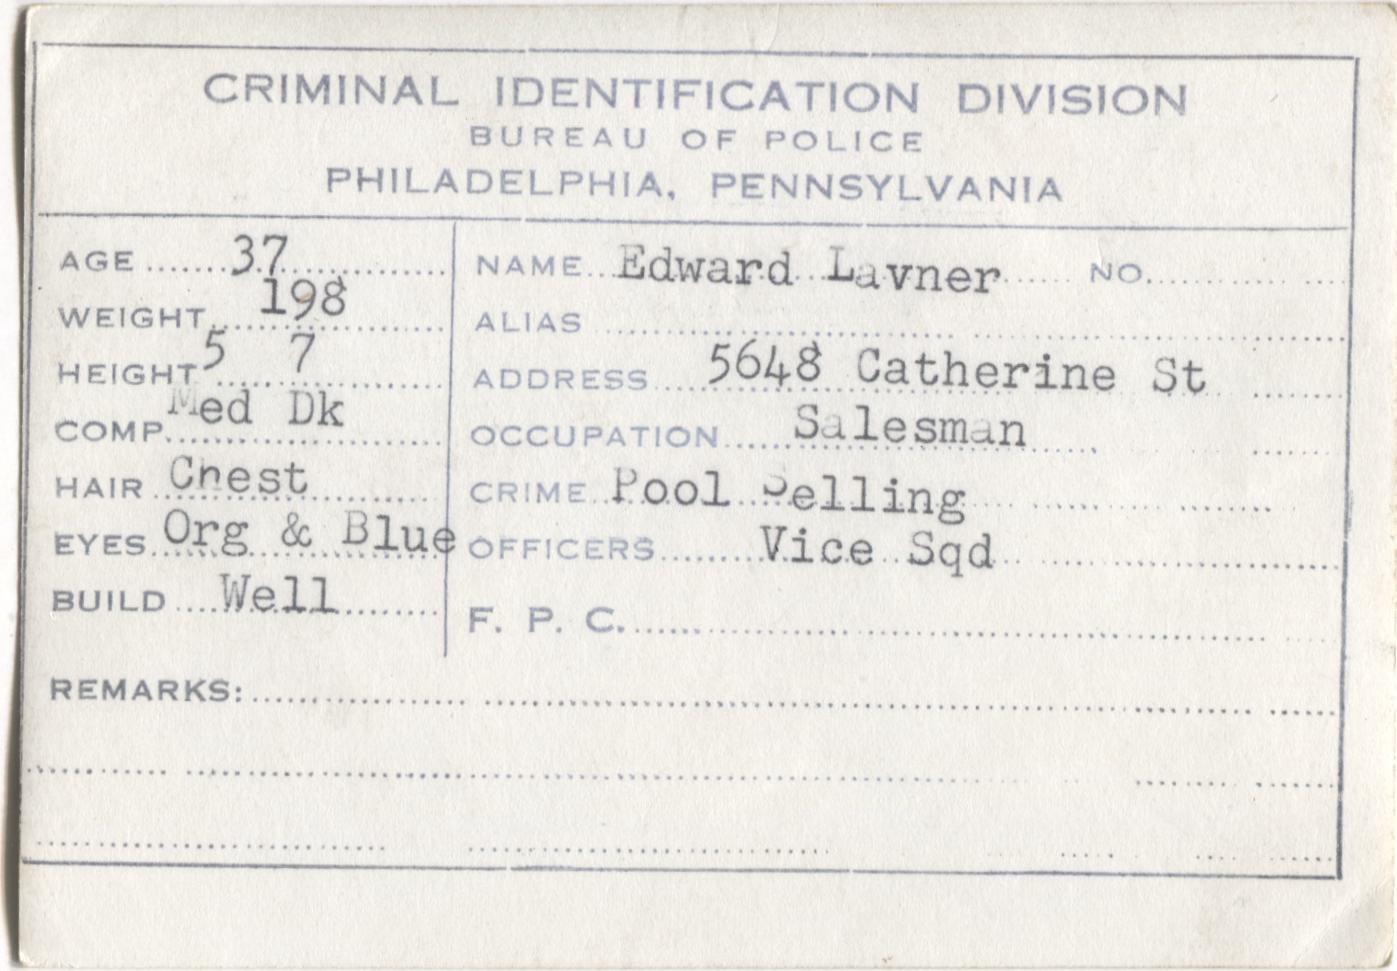 Edward Lavner Mugshot - Arrested on 10/7/1949 for Poolselling